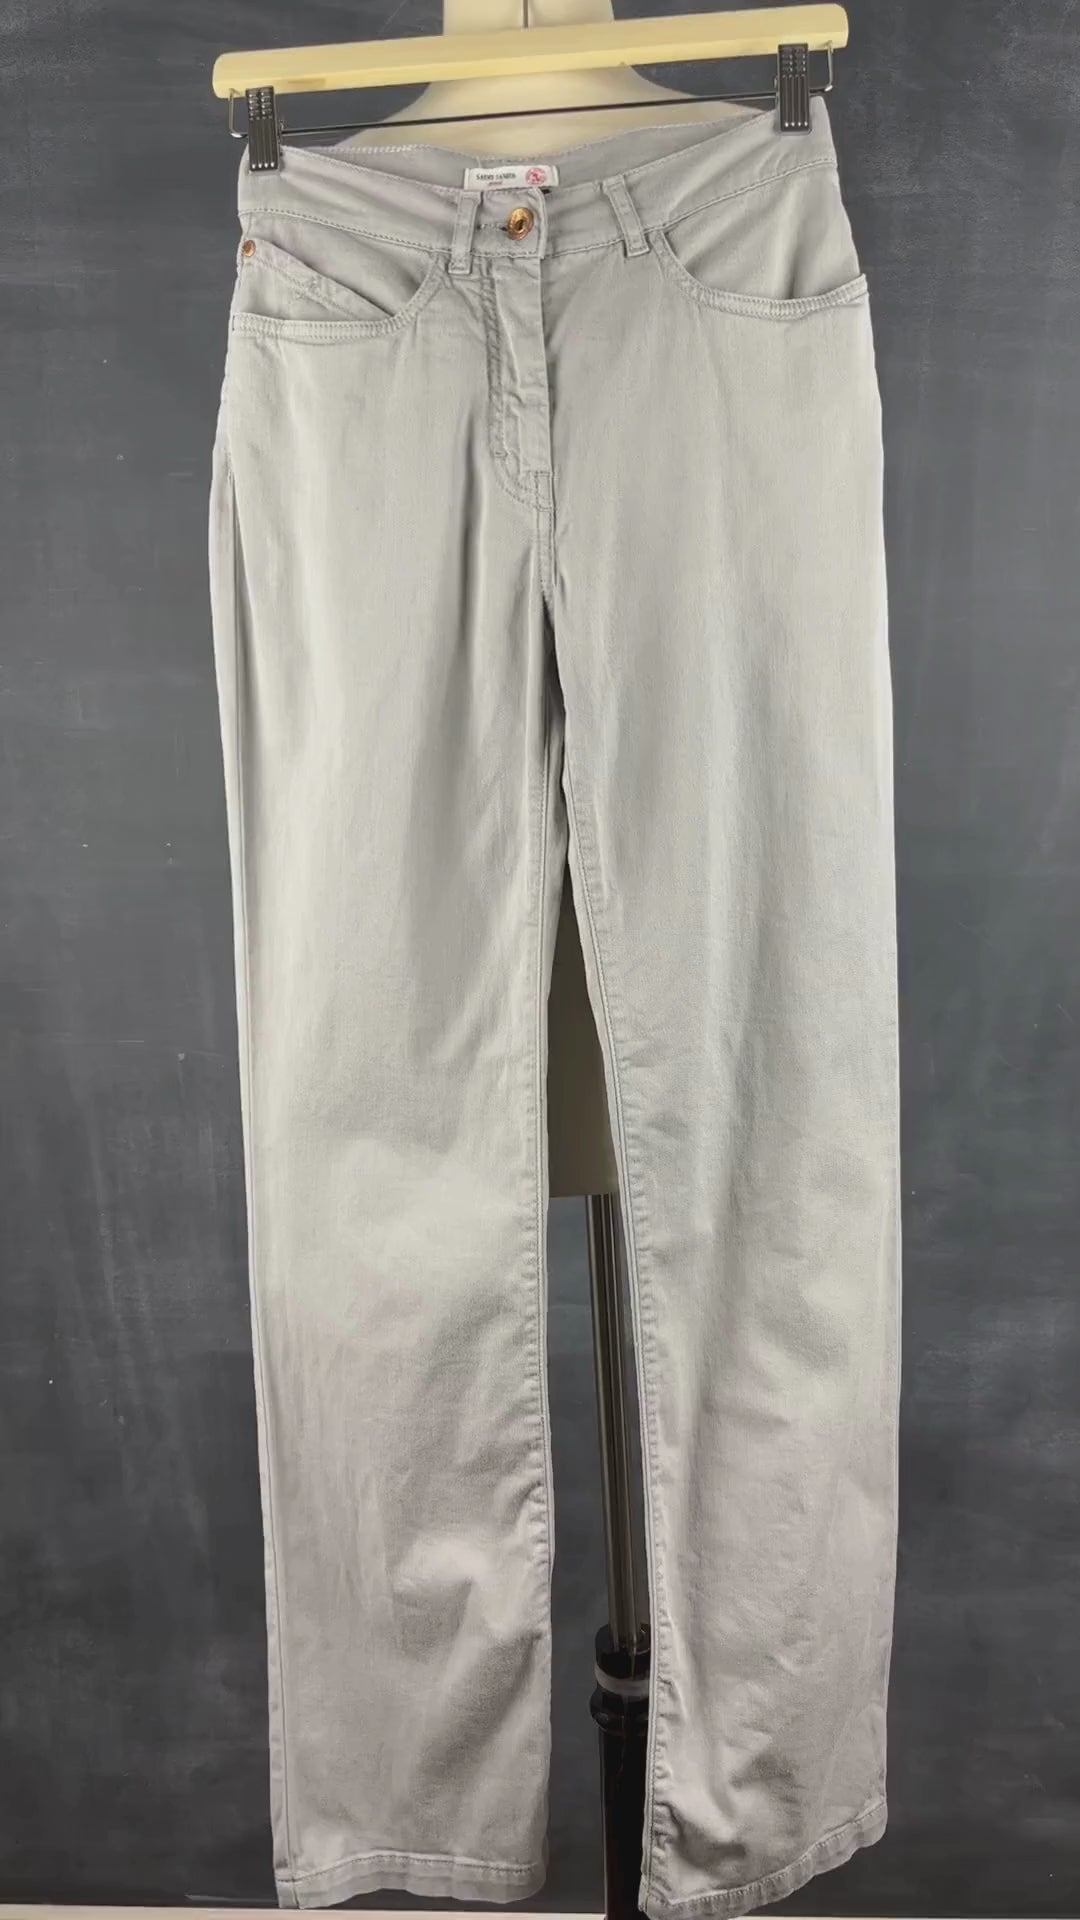 Pantalon style jeans gris coupe droite taille moyenne Saint James, taille 4 (xs). Vue de la vidéo qui présente tous les détails du pantalon.